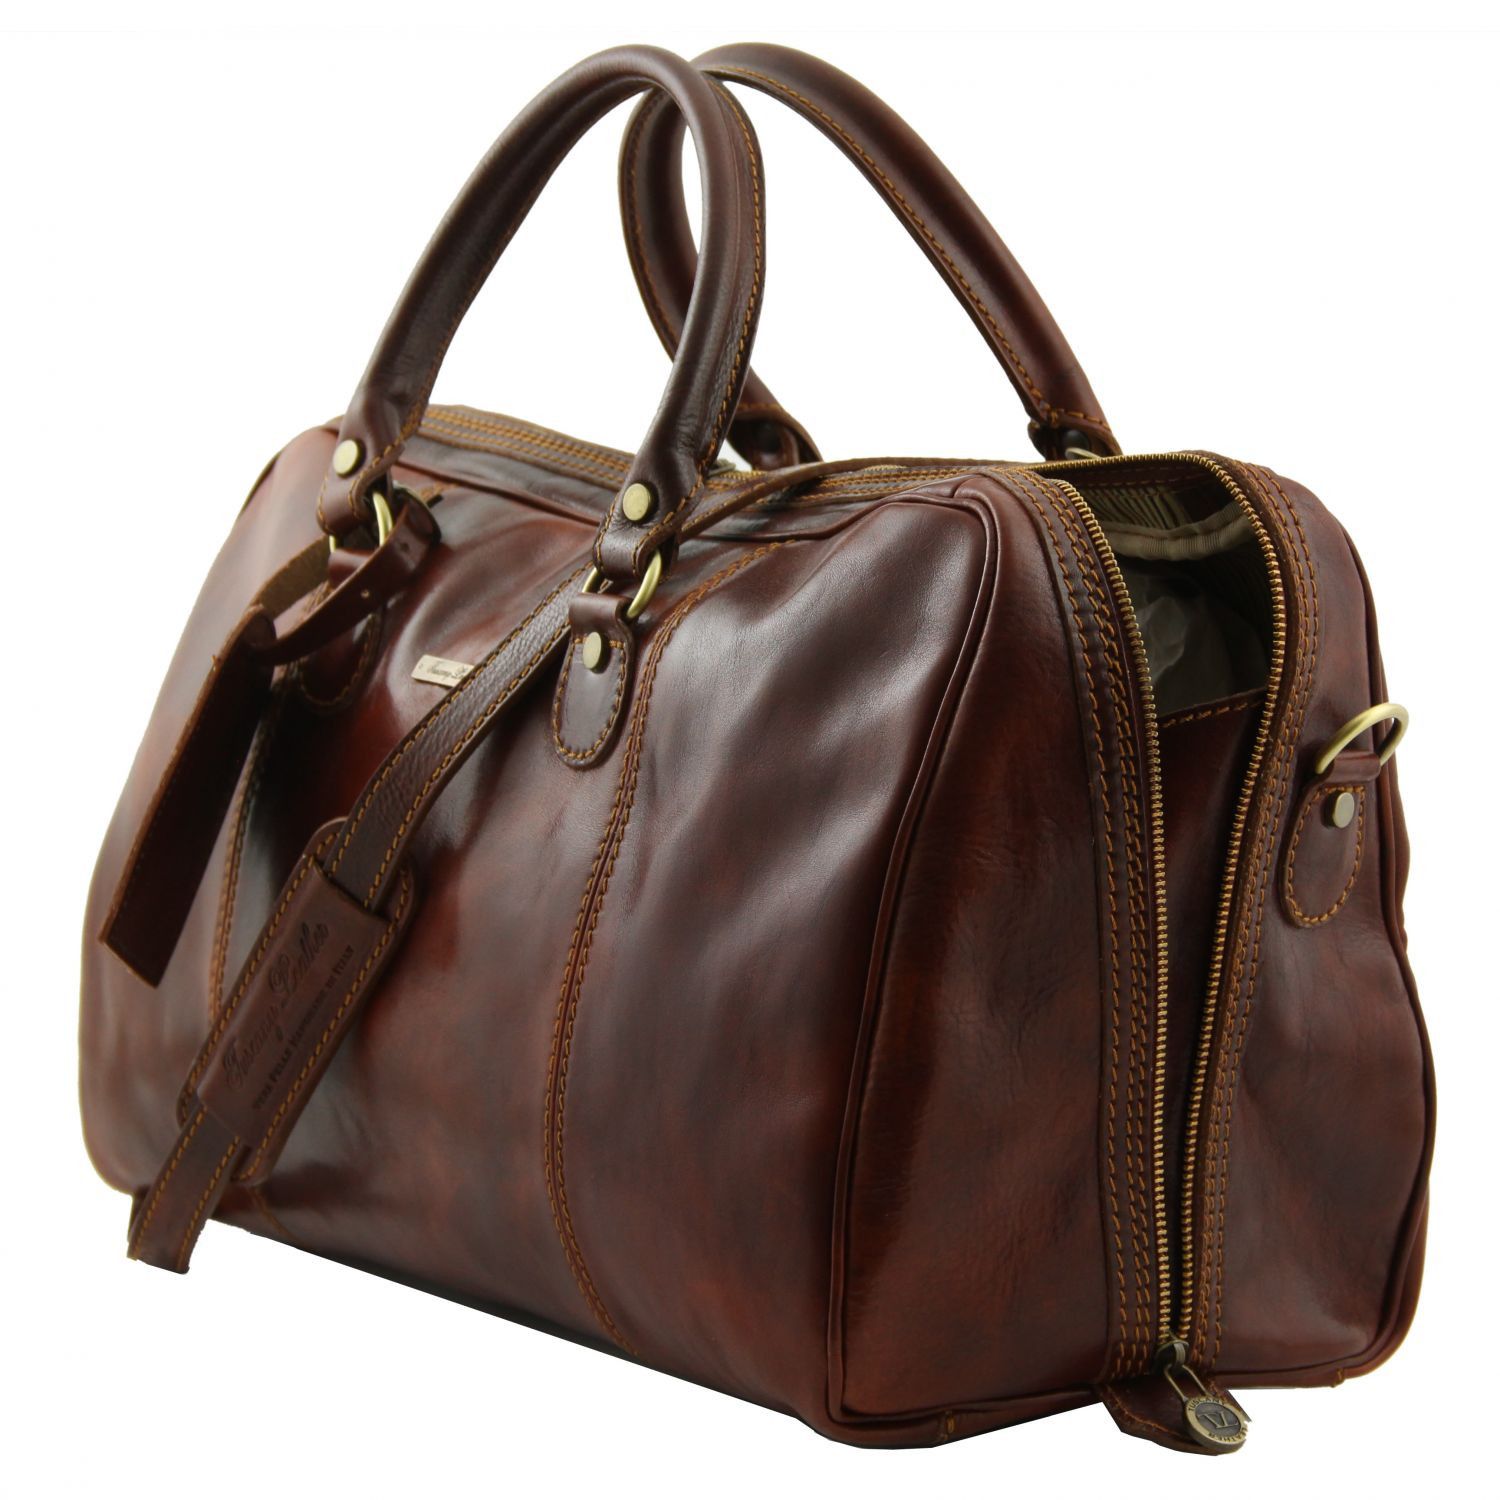 Paris Travel Leather Duffle bag Dark Brown TL1045